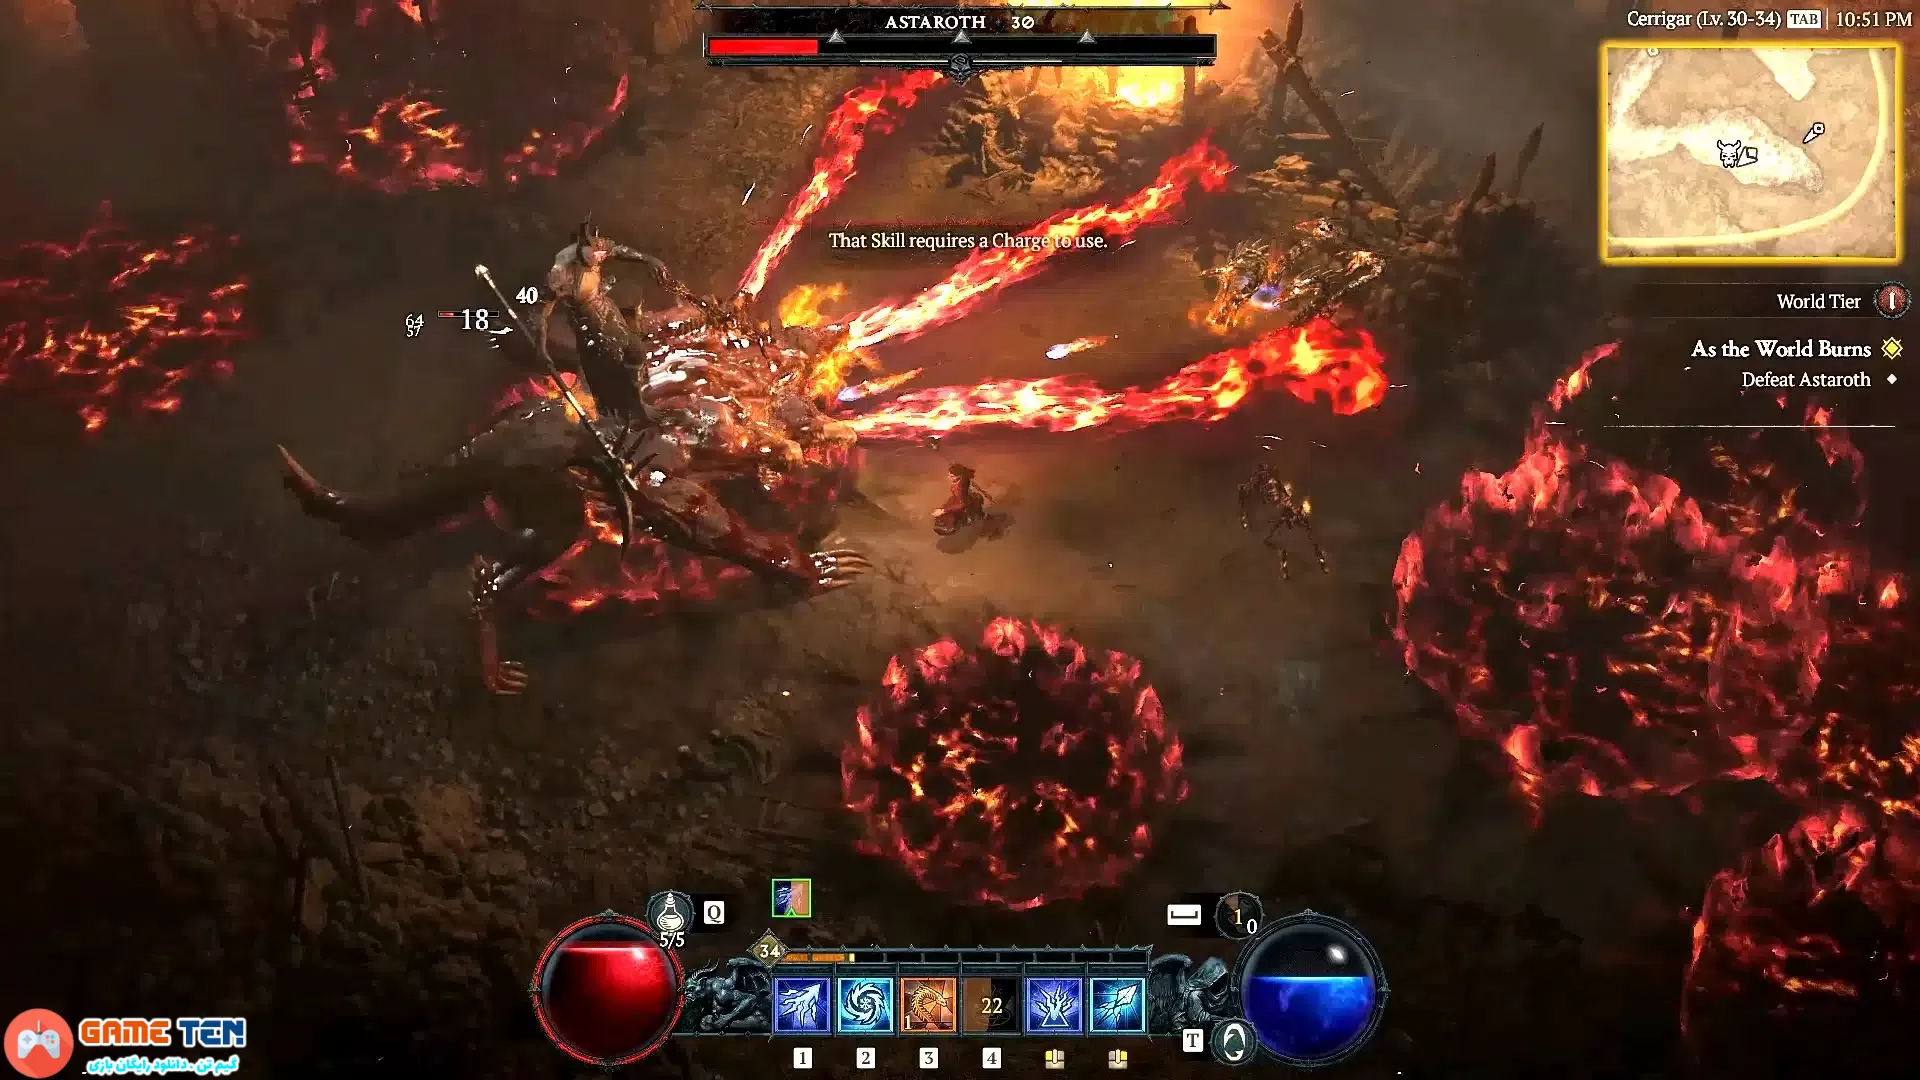 دانلود بازی Diablo 4 برای کامپیوتر 